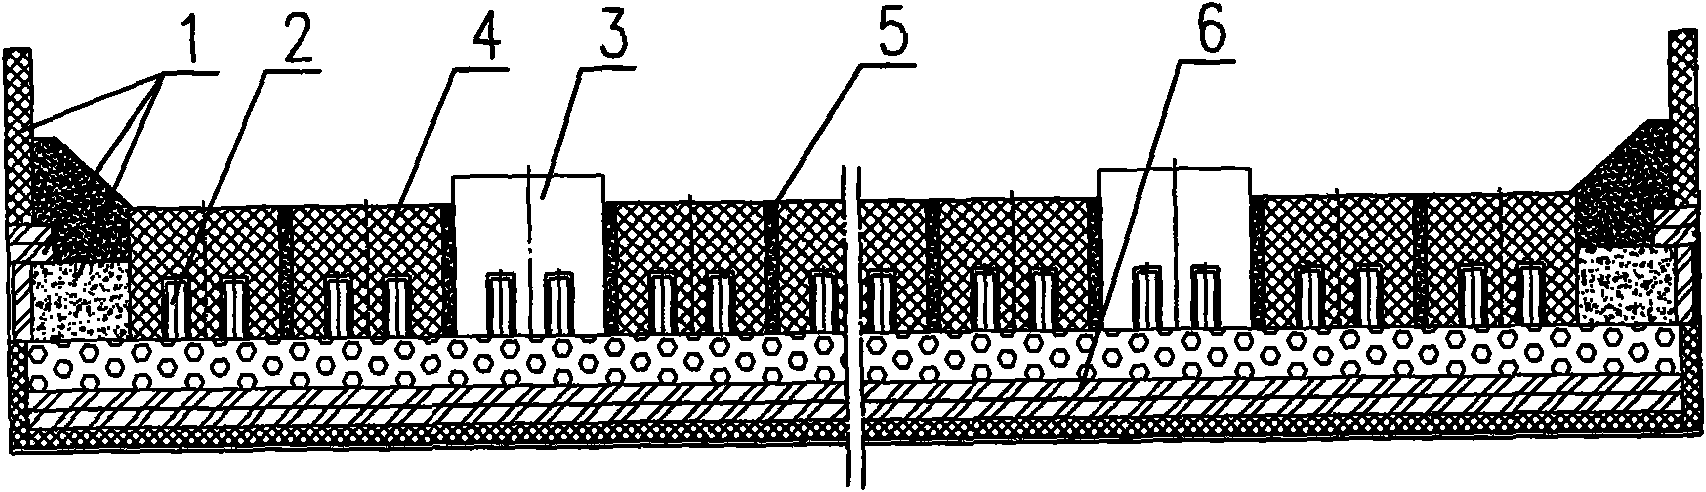 Cathode structure of aluminium cell